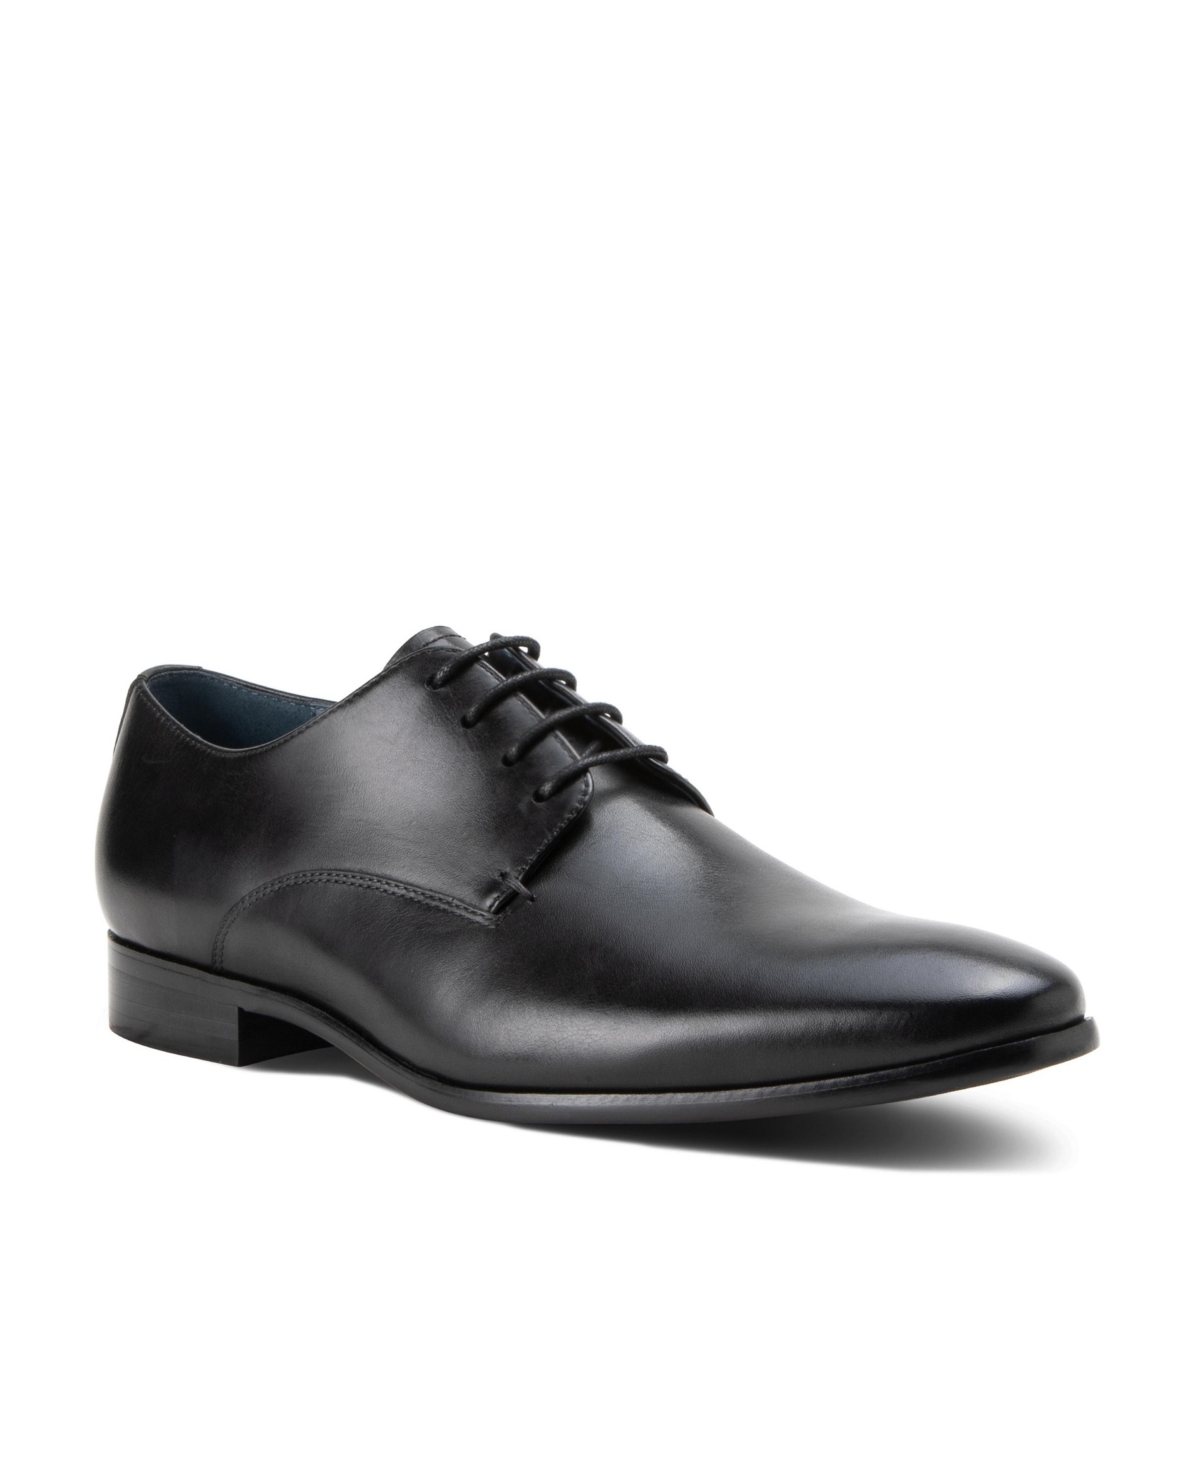 Men's Fairfax Dress Lace-Up Plain Toe Derby Leather Shoes - Chestnut